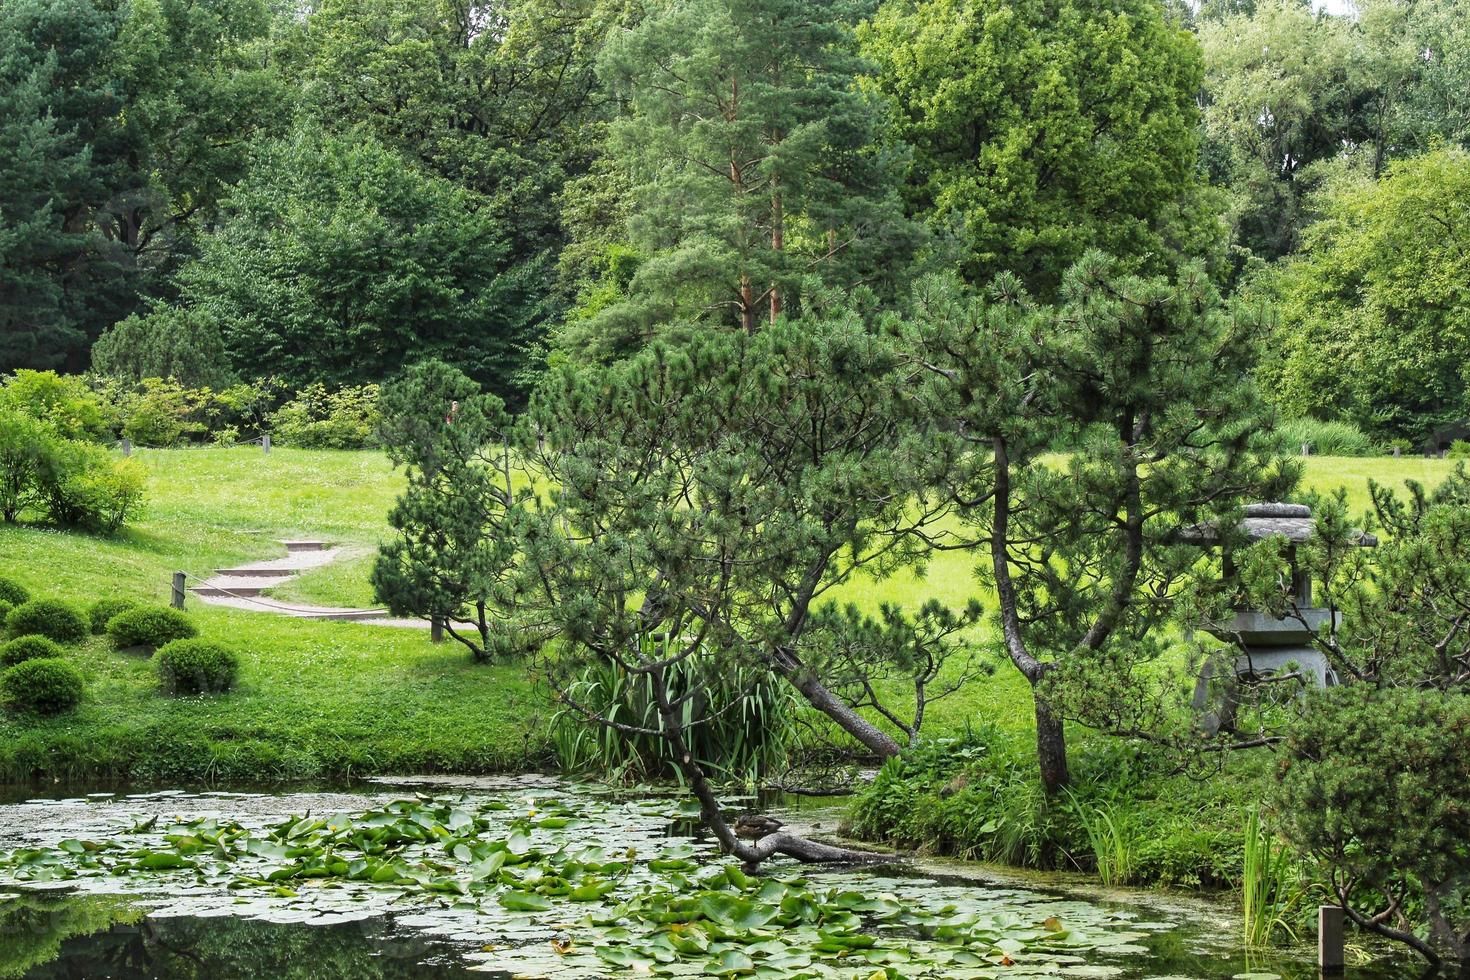 skön landskap se i japansk traditionell botanisk dekorativ trädgård. lugna natur scen av grön sommar sjö damm vatten och pagod lykta. zen, meditation, harmoni begrepp foto